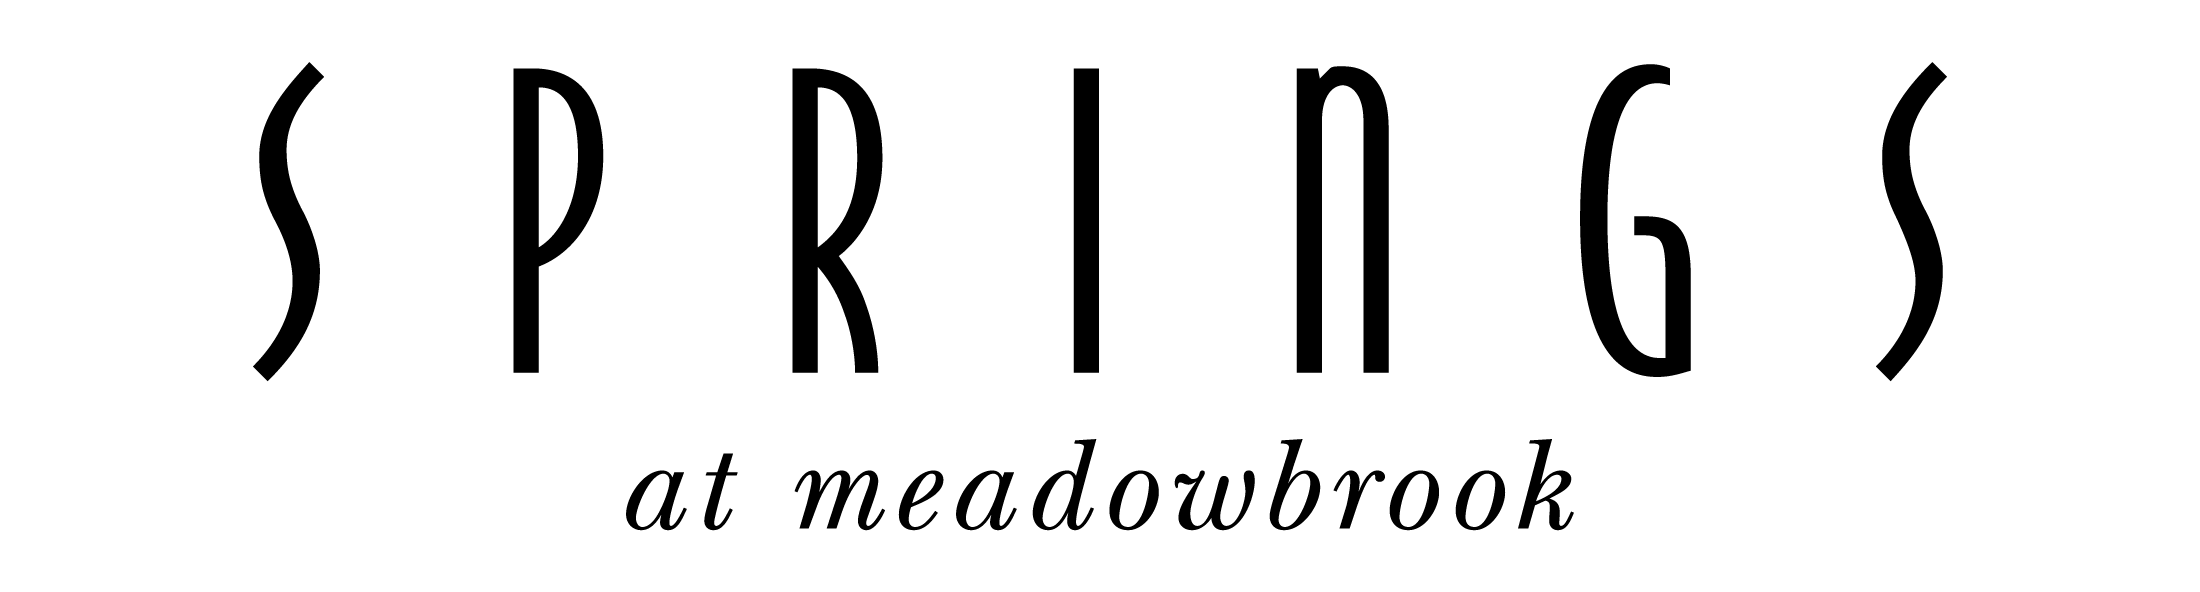 Springs at Meadowbrook Logo - Black